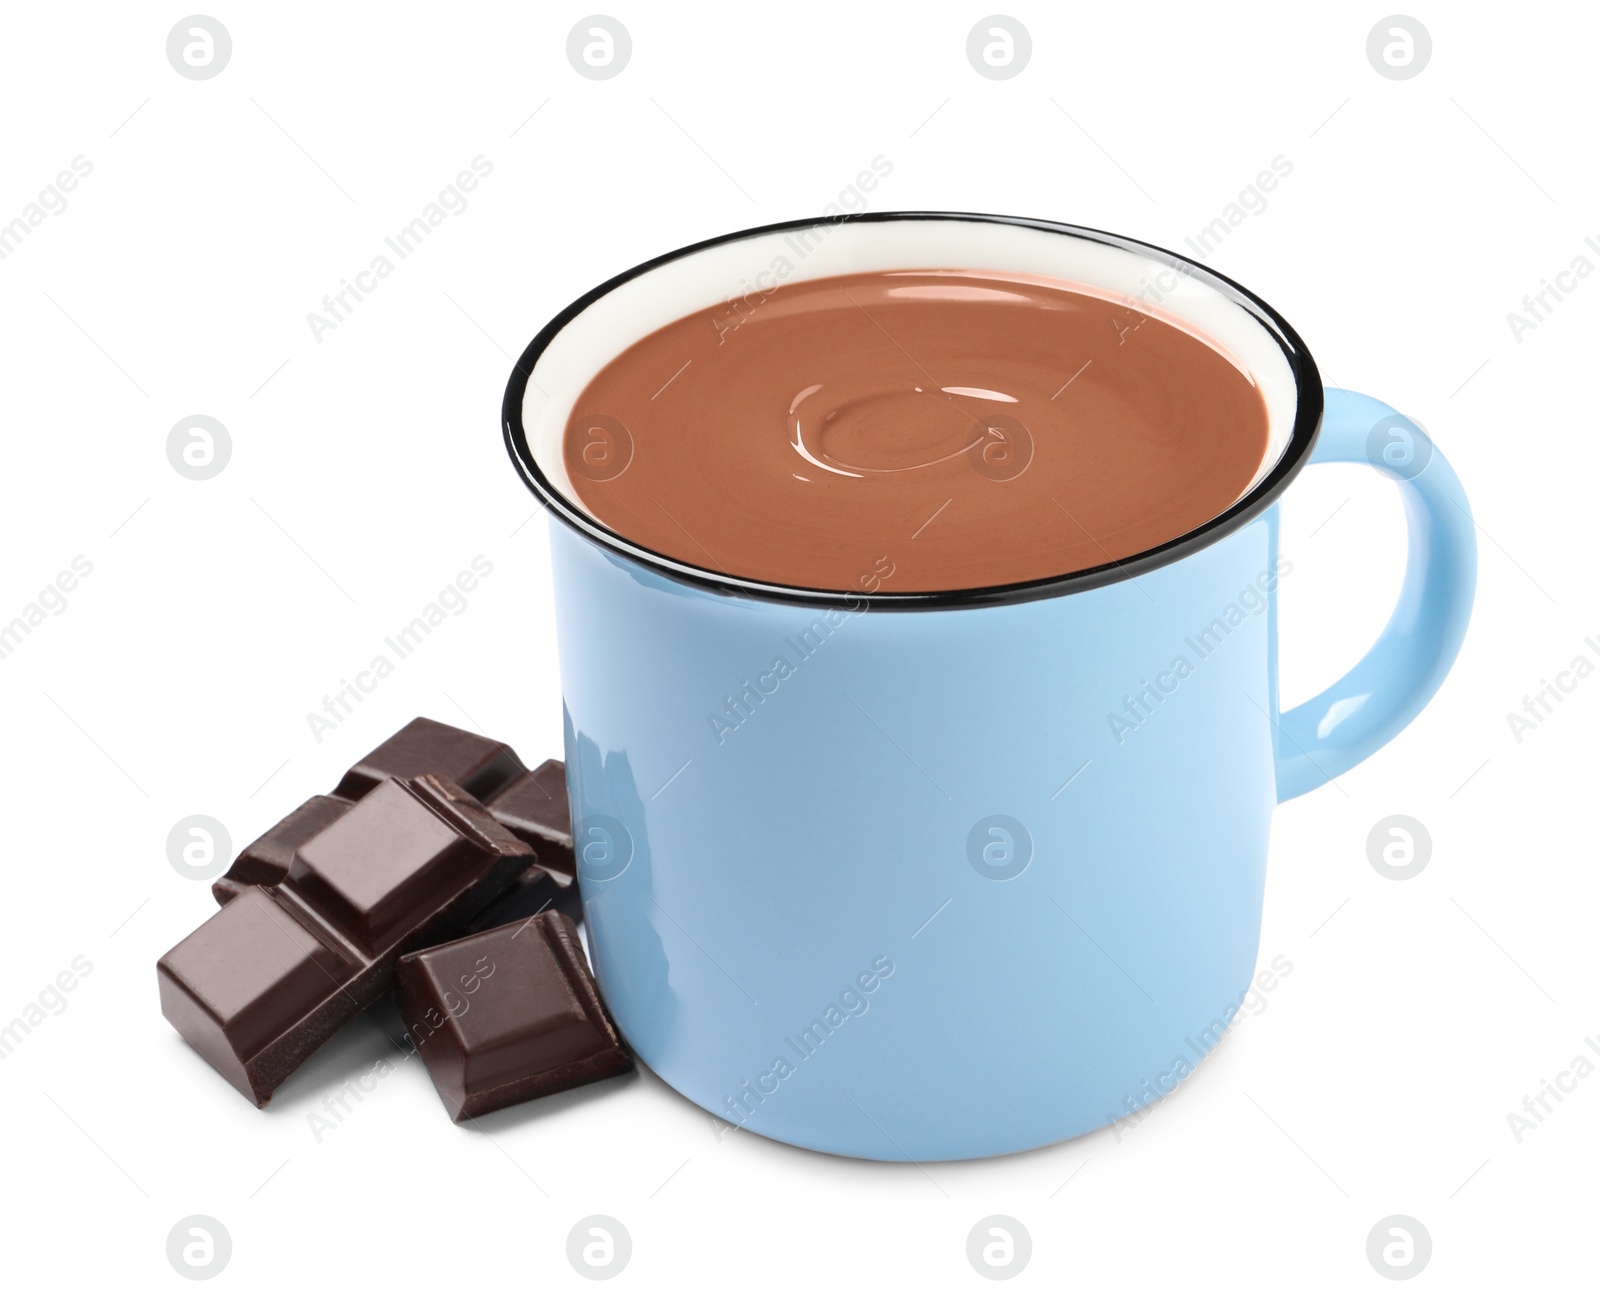 Photo of Yummy hot chocolate in light blue mug on white background